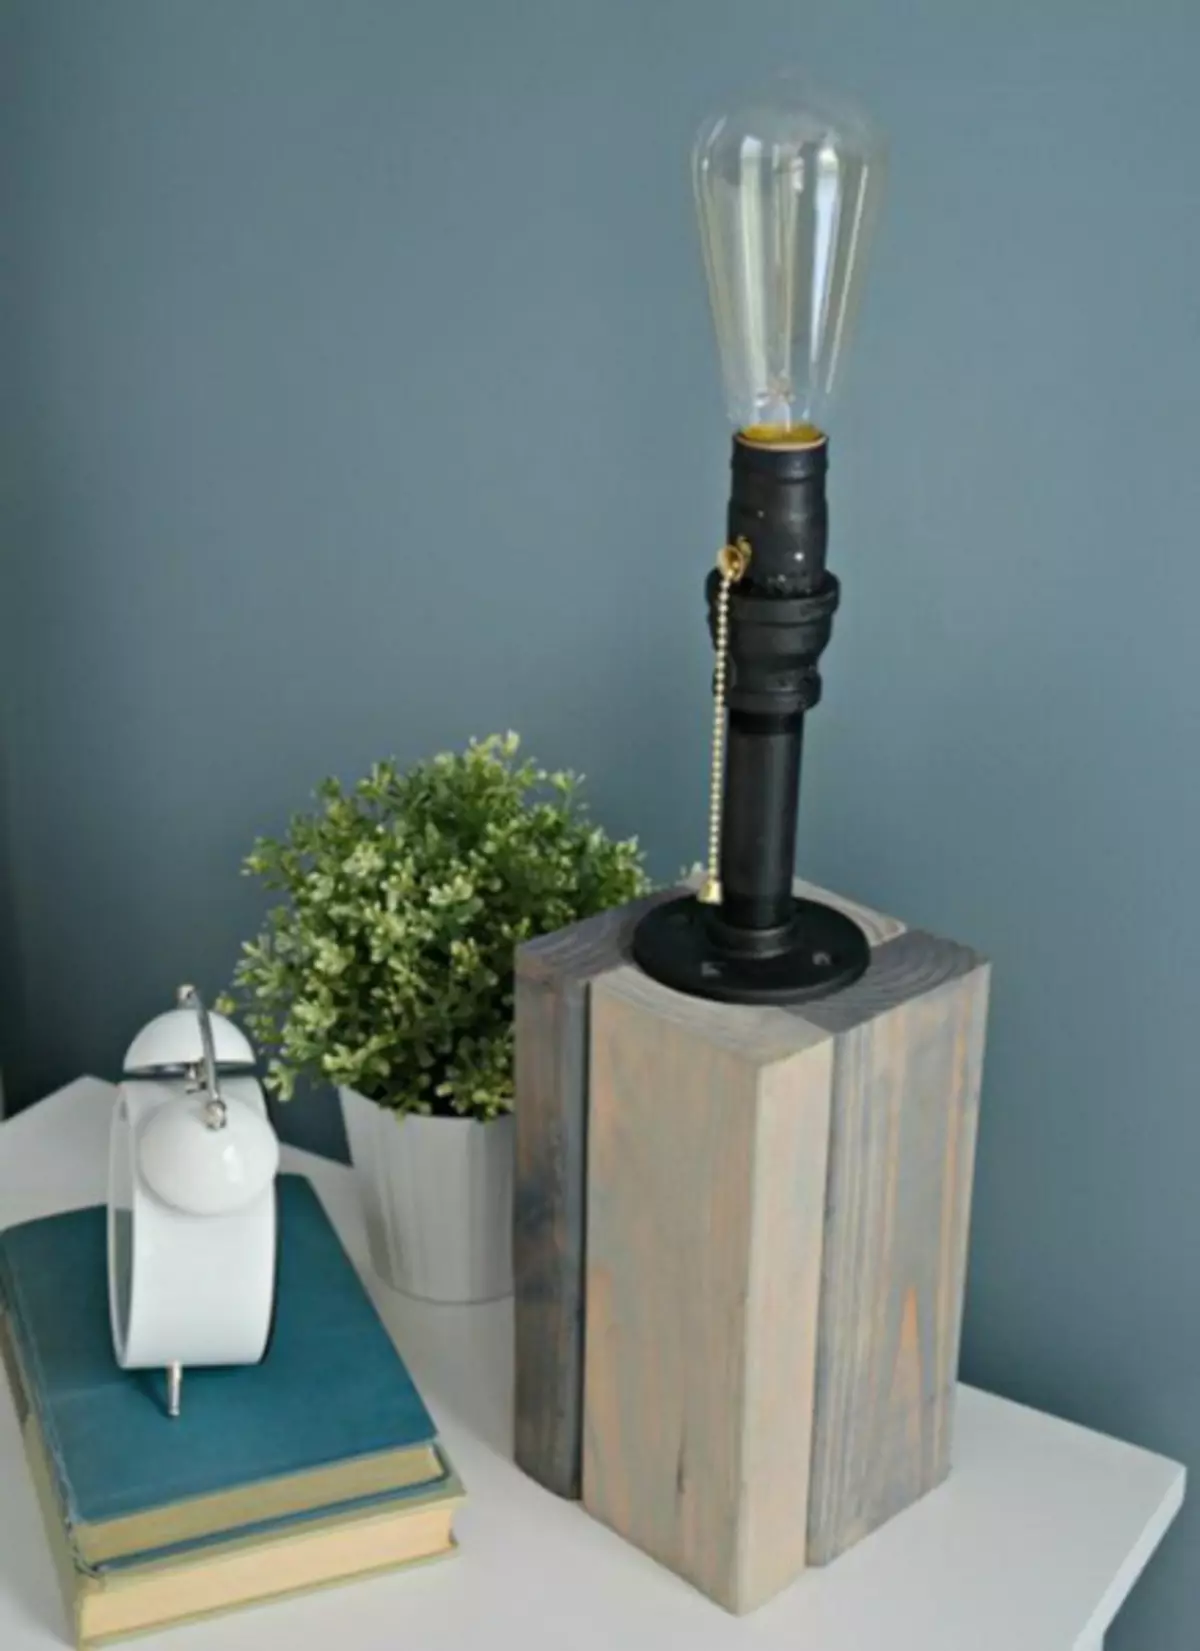 วิธีทำโคมไฟตั้งโต๊ะที่มีฐานไม้ (ระดับปริญญาโท, ภาพถ่าย)